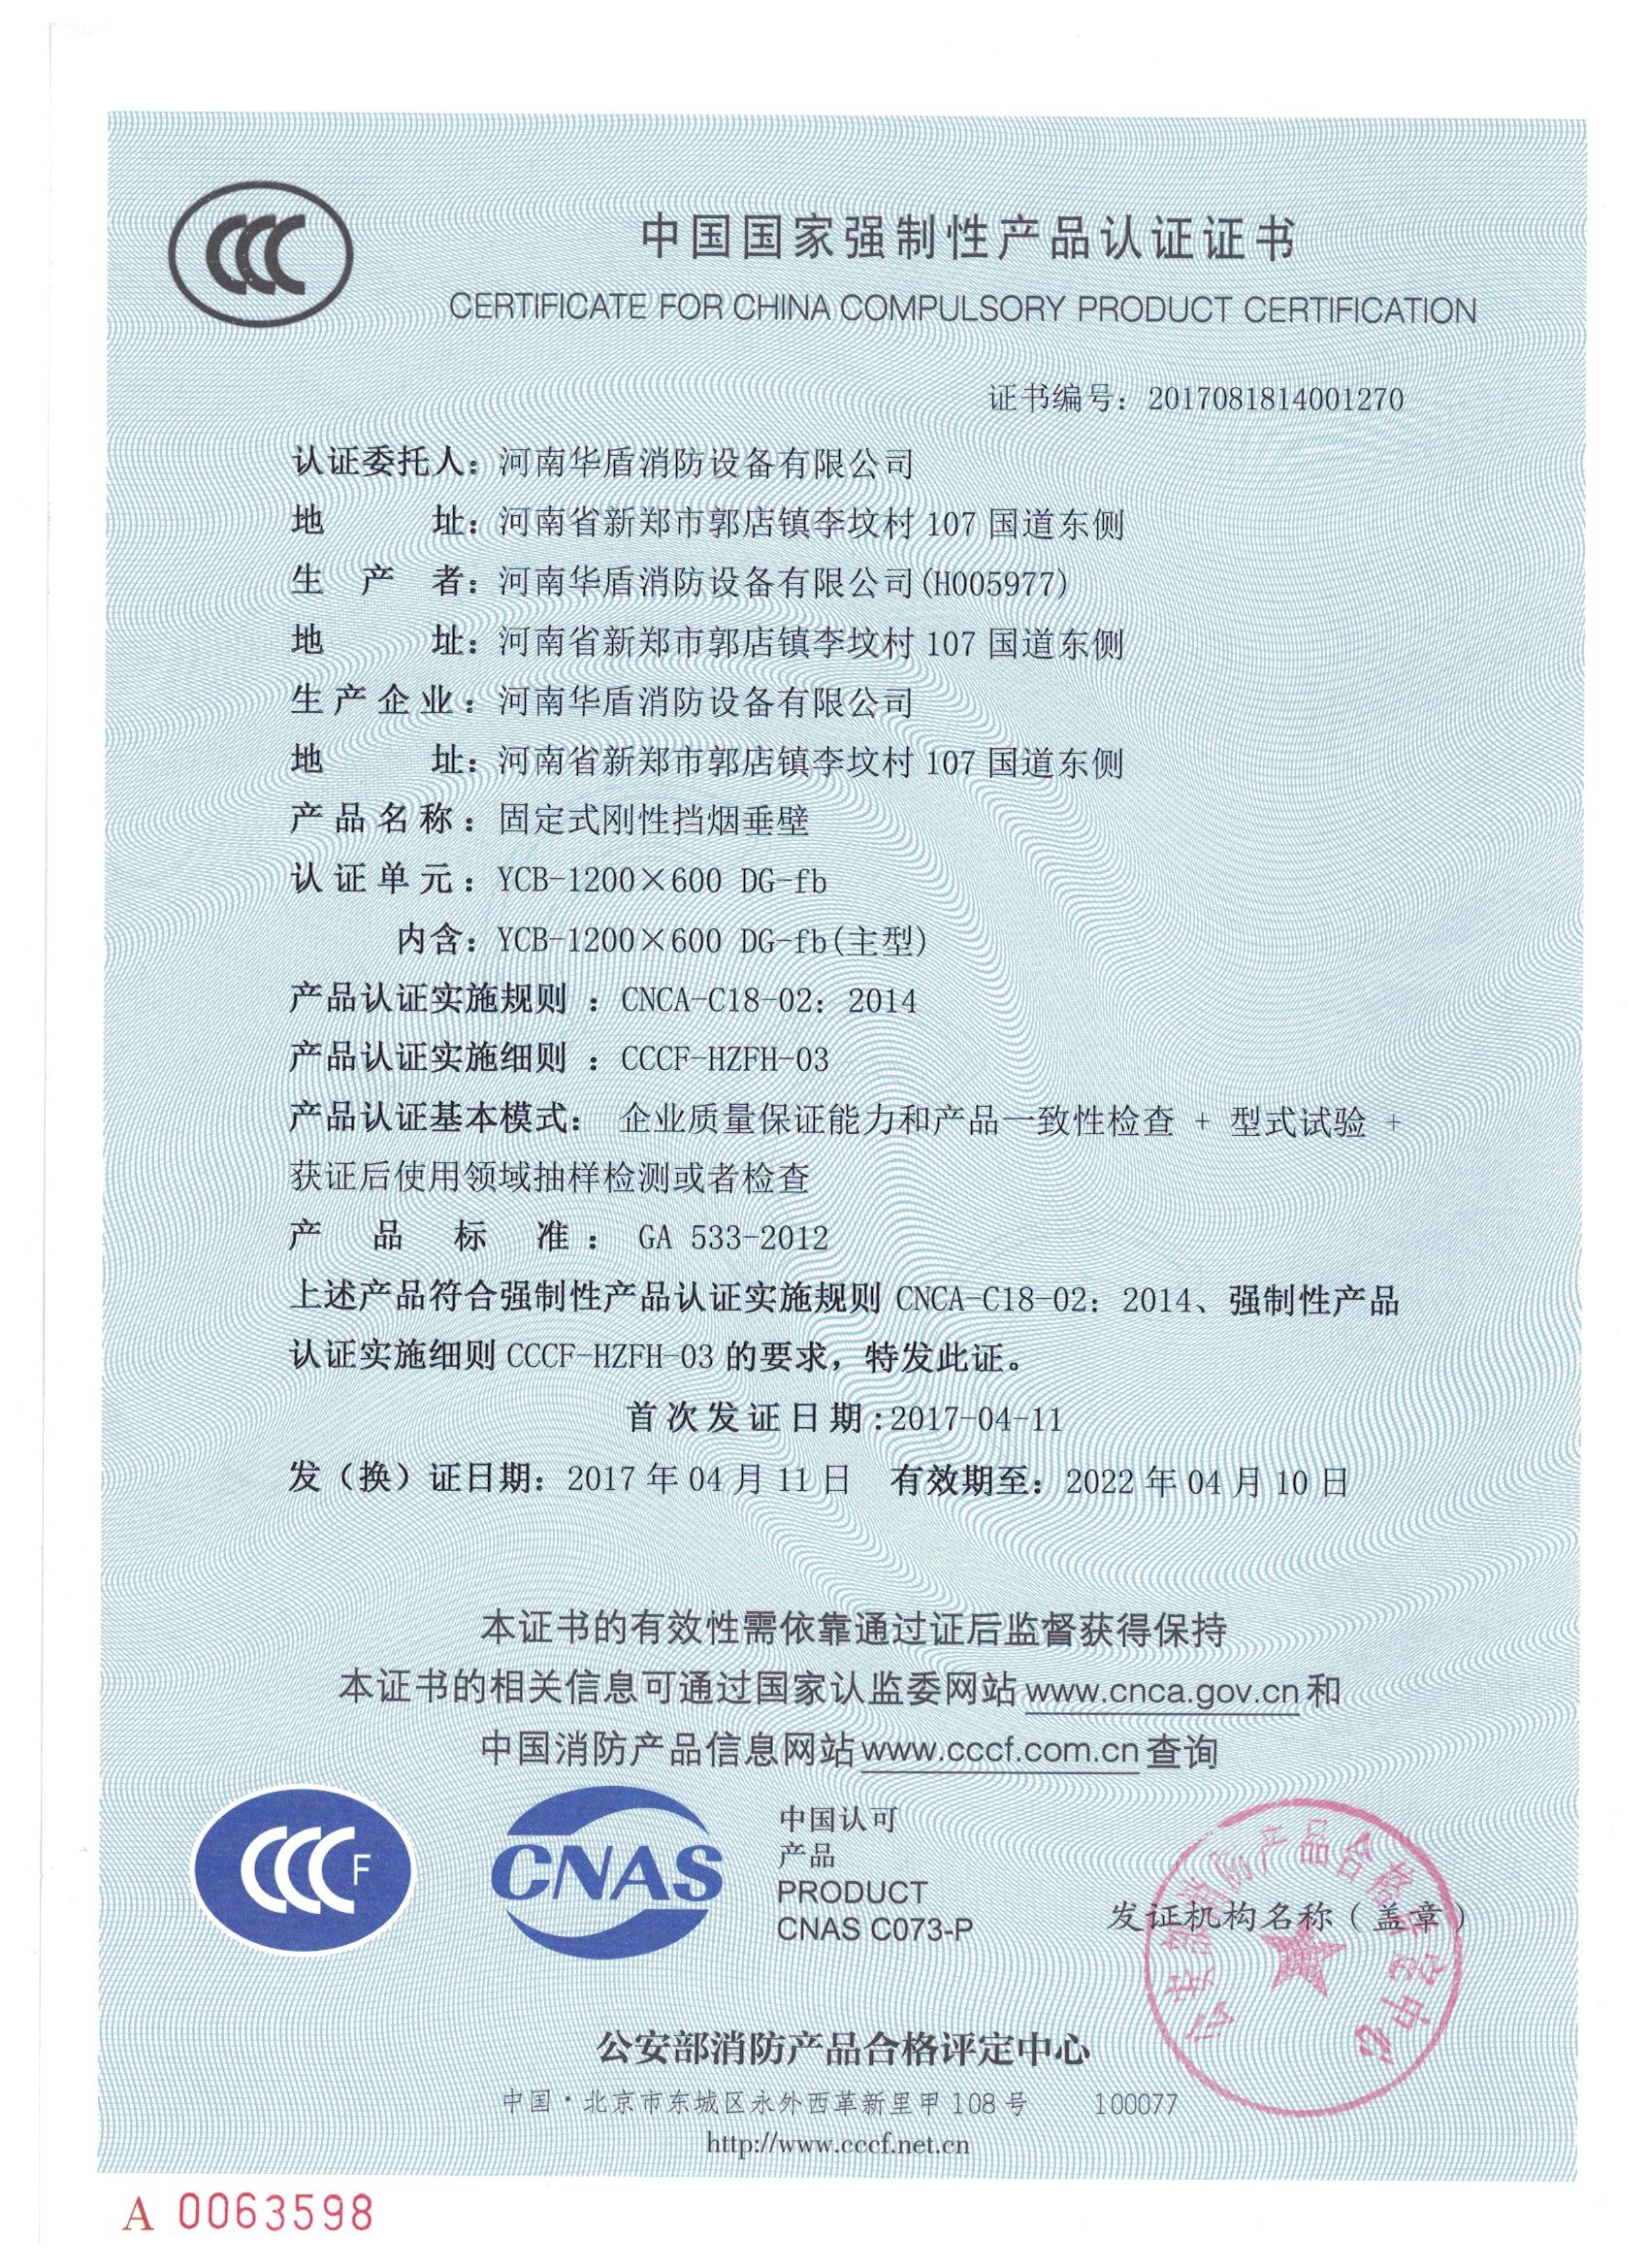 YCB-1200X600 DG-fb-3C证书